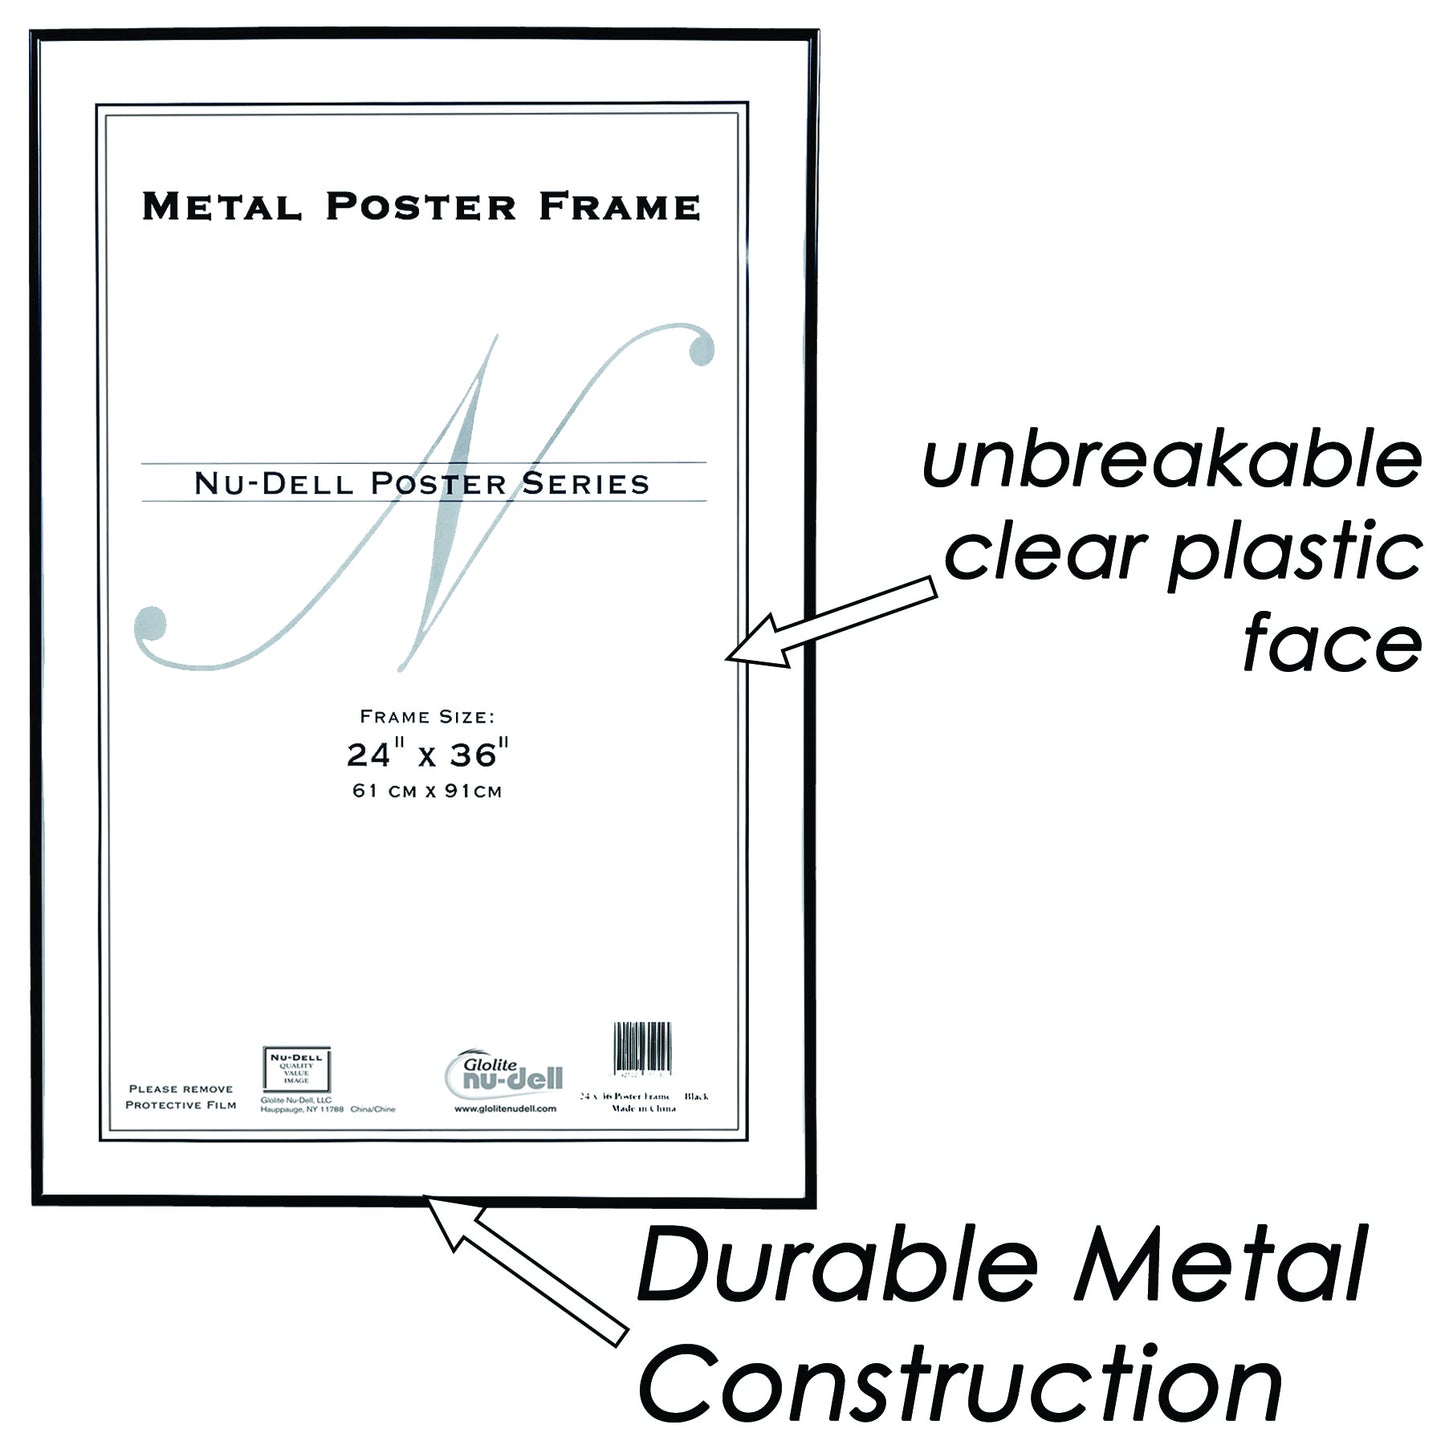 Metal Poster Frame, 24" x 36"